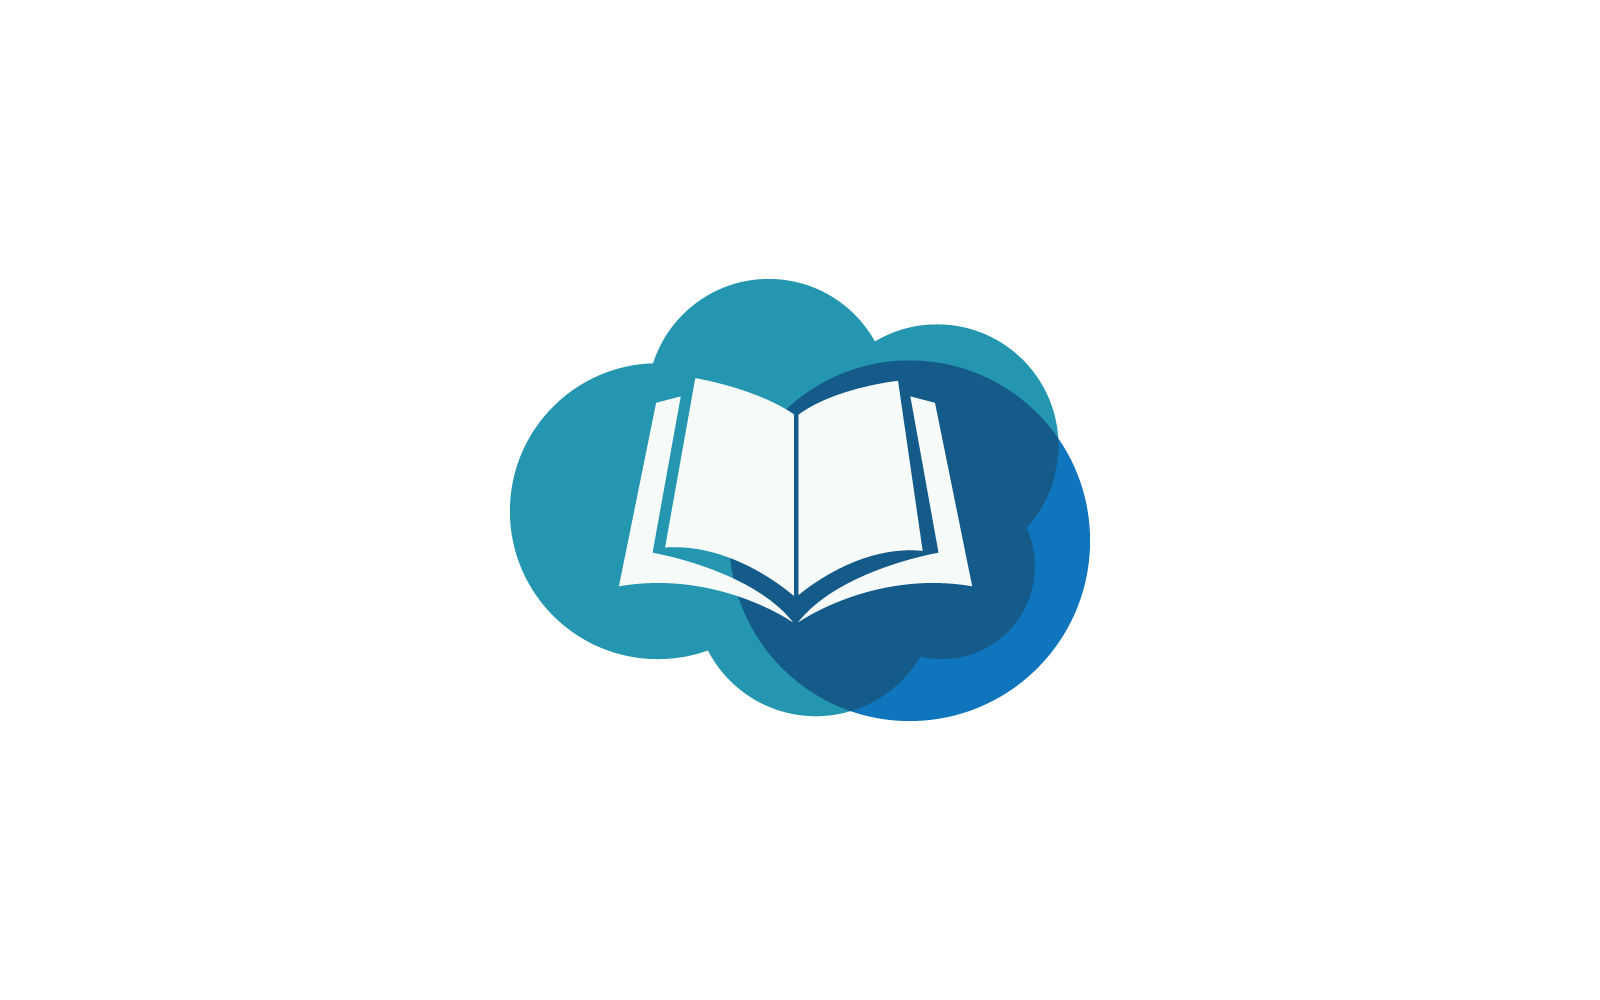 Book education logo vector icon design template